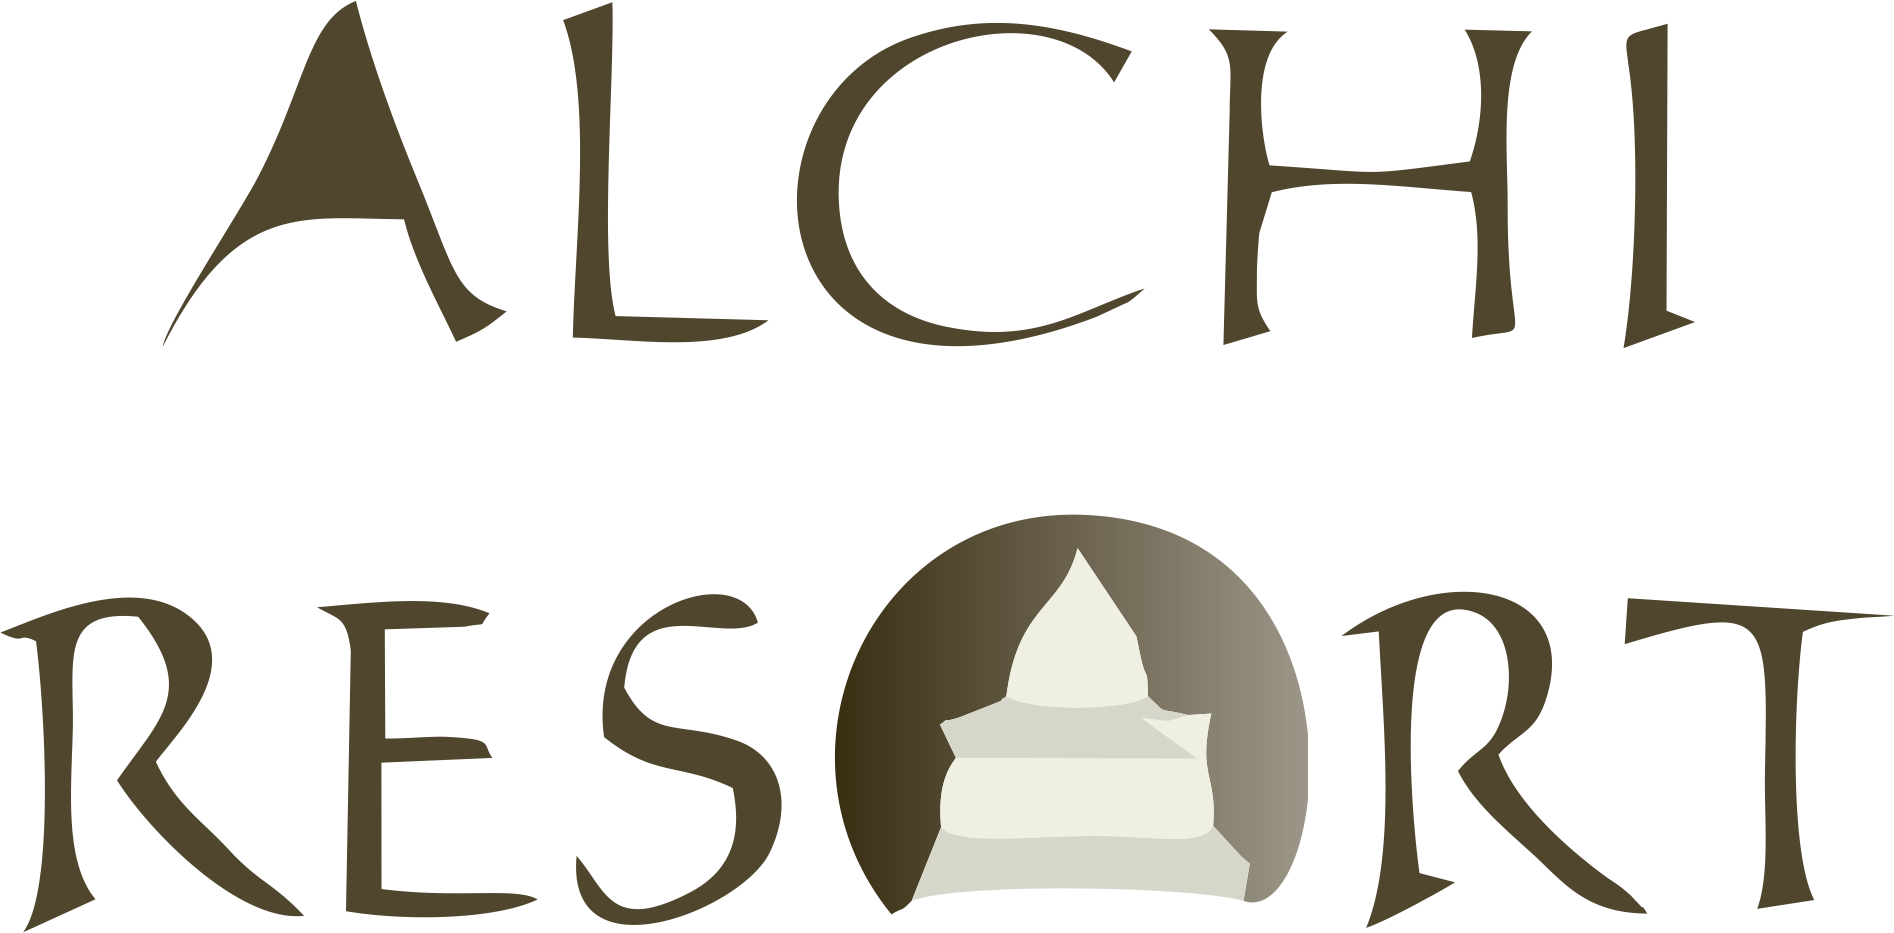 Alchi Resort Logo